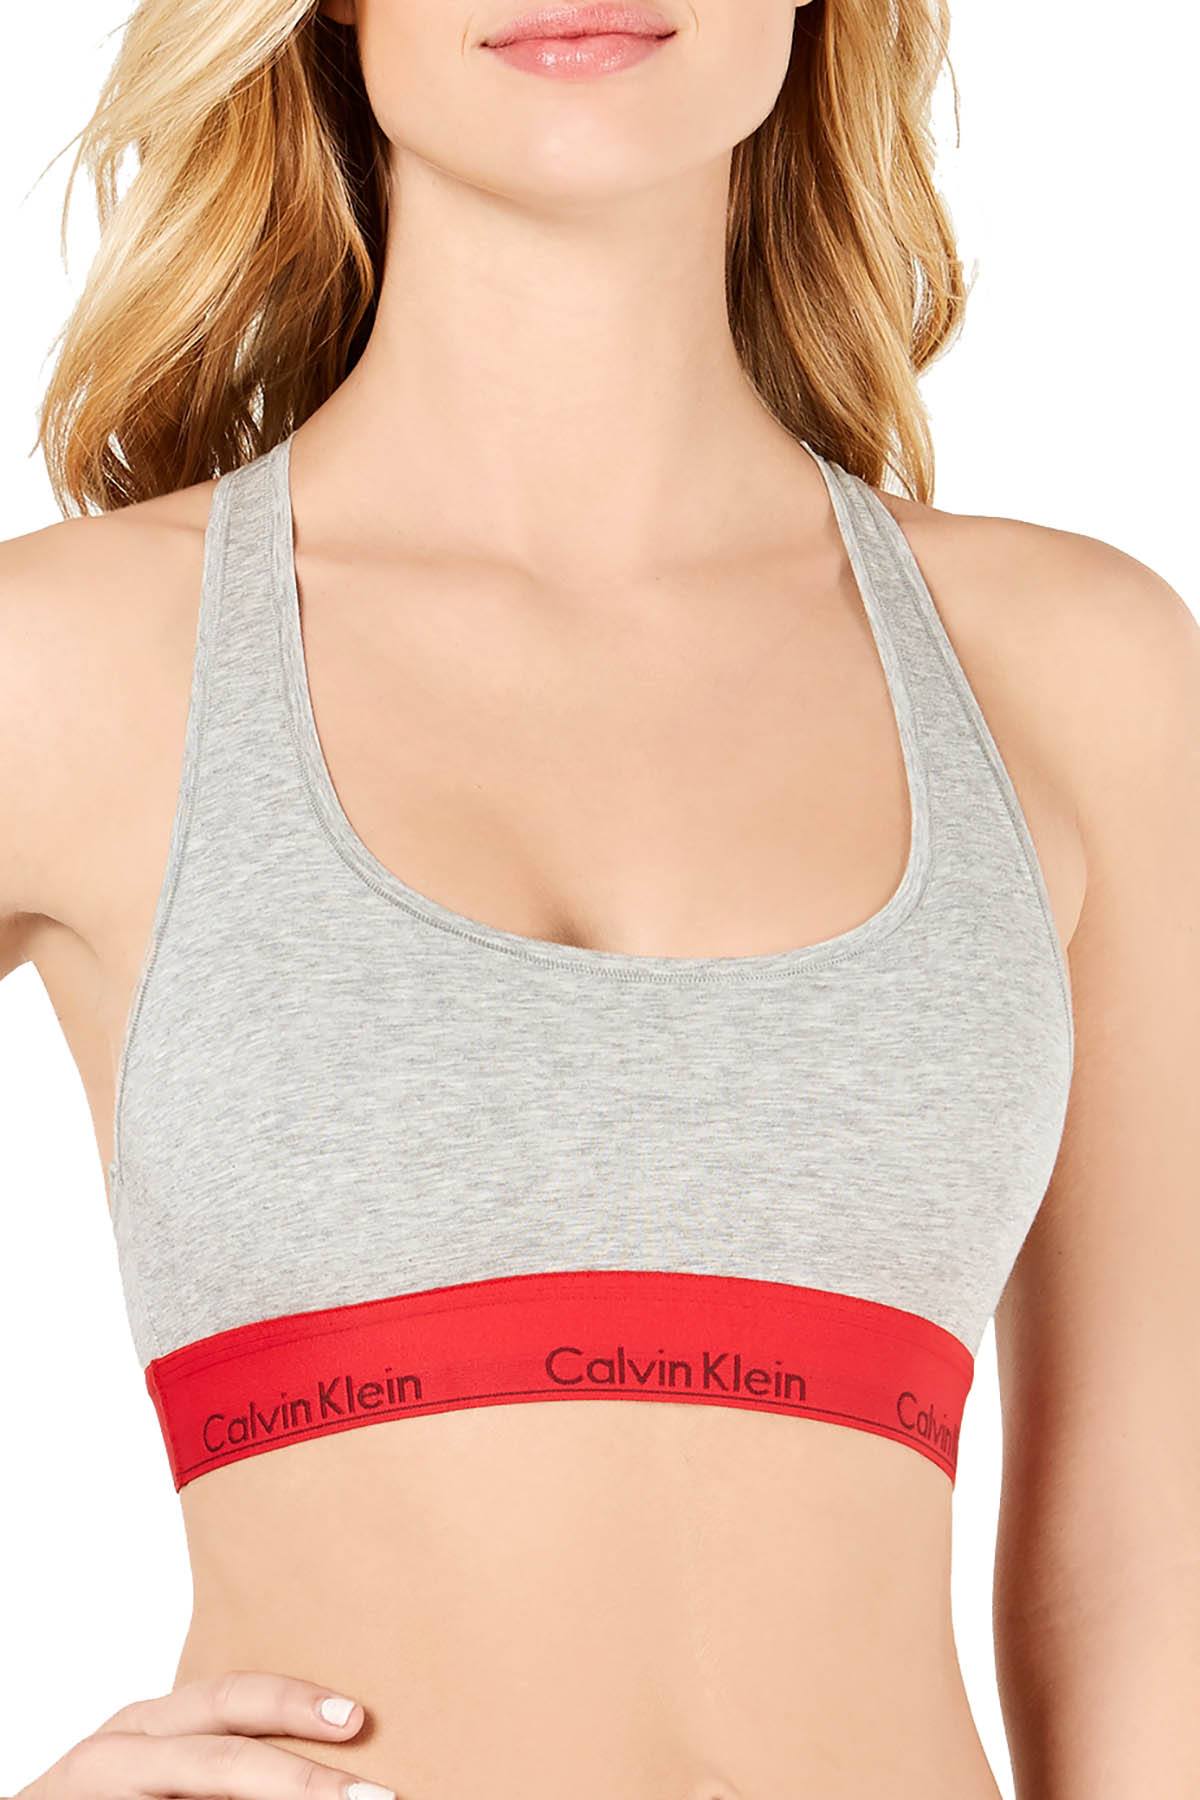 Calvin Klein Heather Grey/Red Modern Cotton/Modal Bralette – CheapUndies